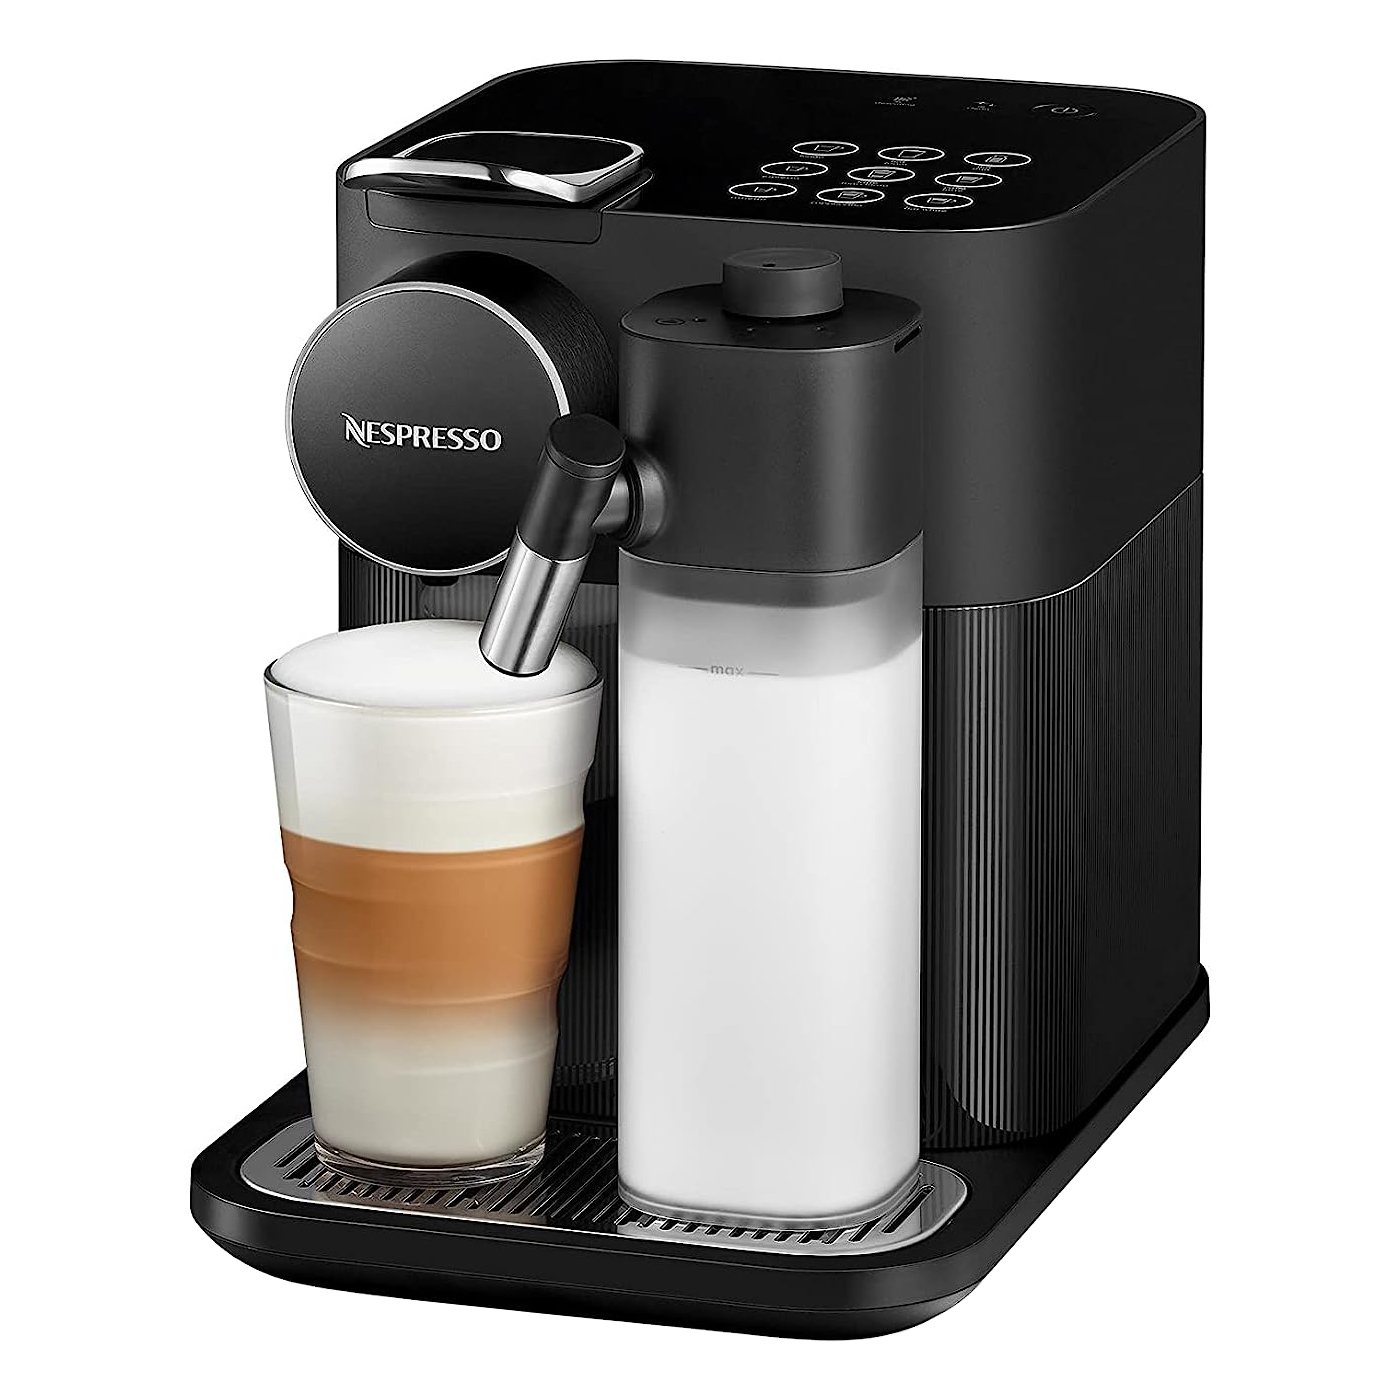 NESPRESSO [i]粉囊系統咖啡機 F531-HK-BK-NE黑